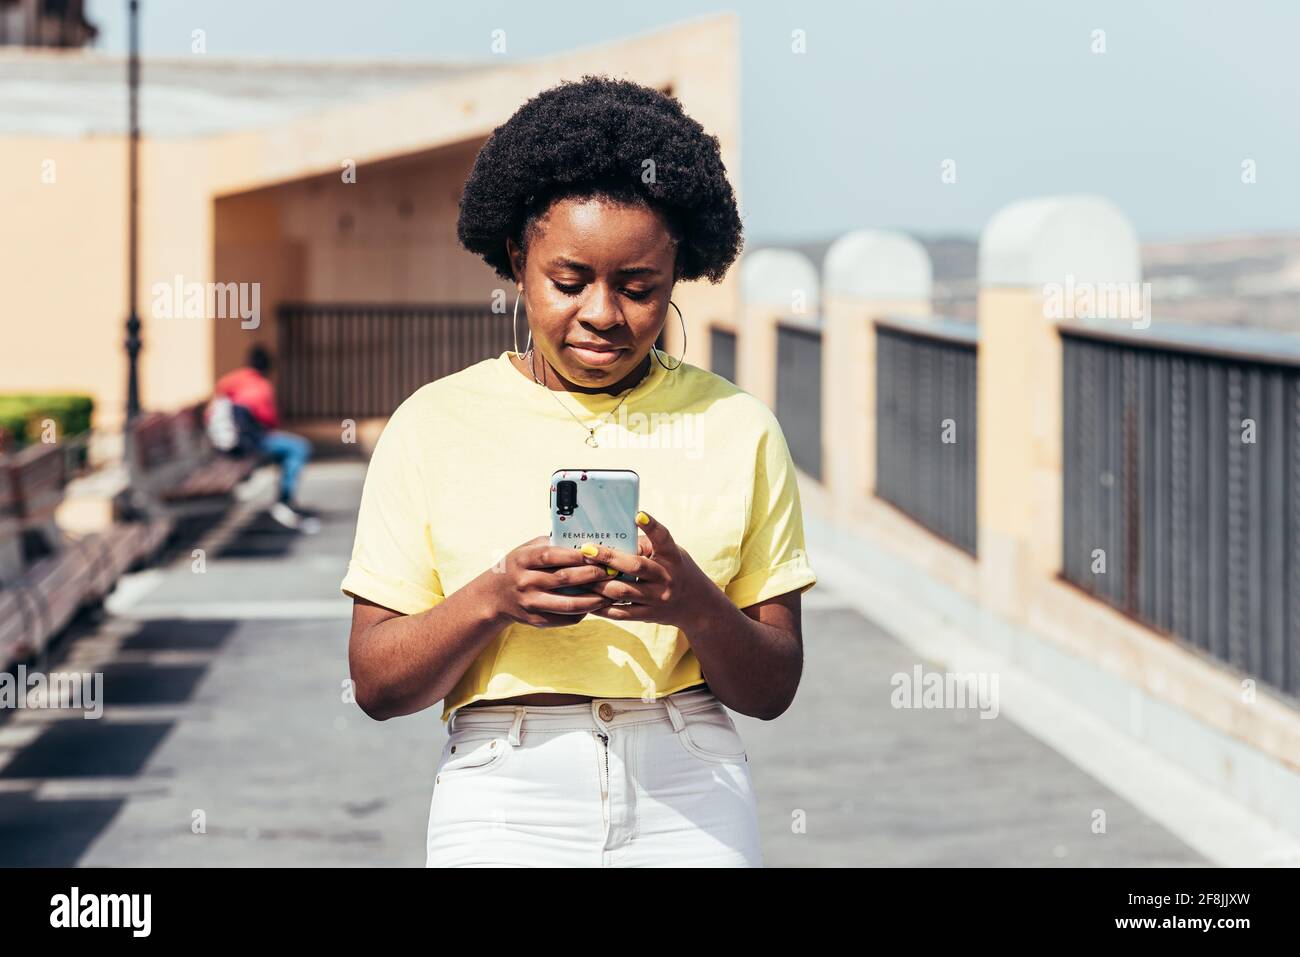 Porträt eines schwarzen Mädchens mit afrohaaren und Reifringen, das ihr Handy benutzt und in einem städtischen Raum läuft. Stockfoto